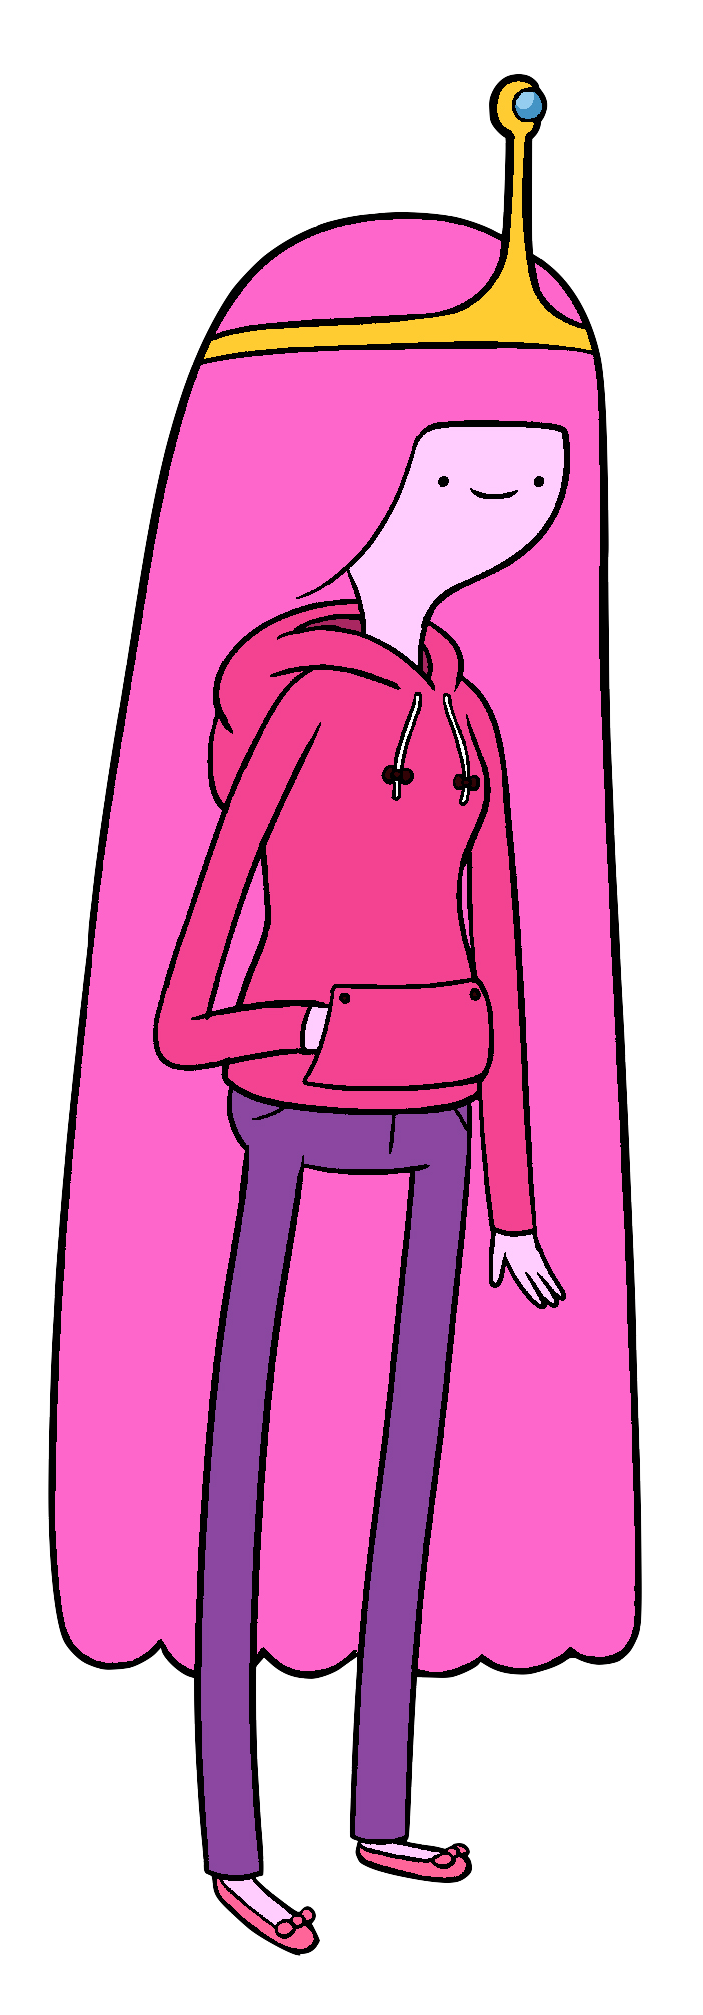 Amy Sedaris | Adventure Time Wiki | Fandom